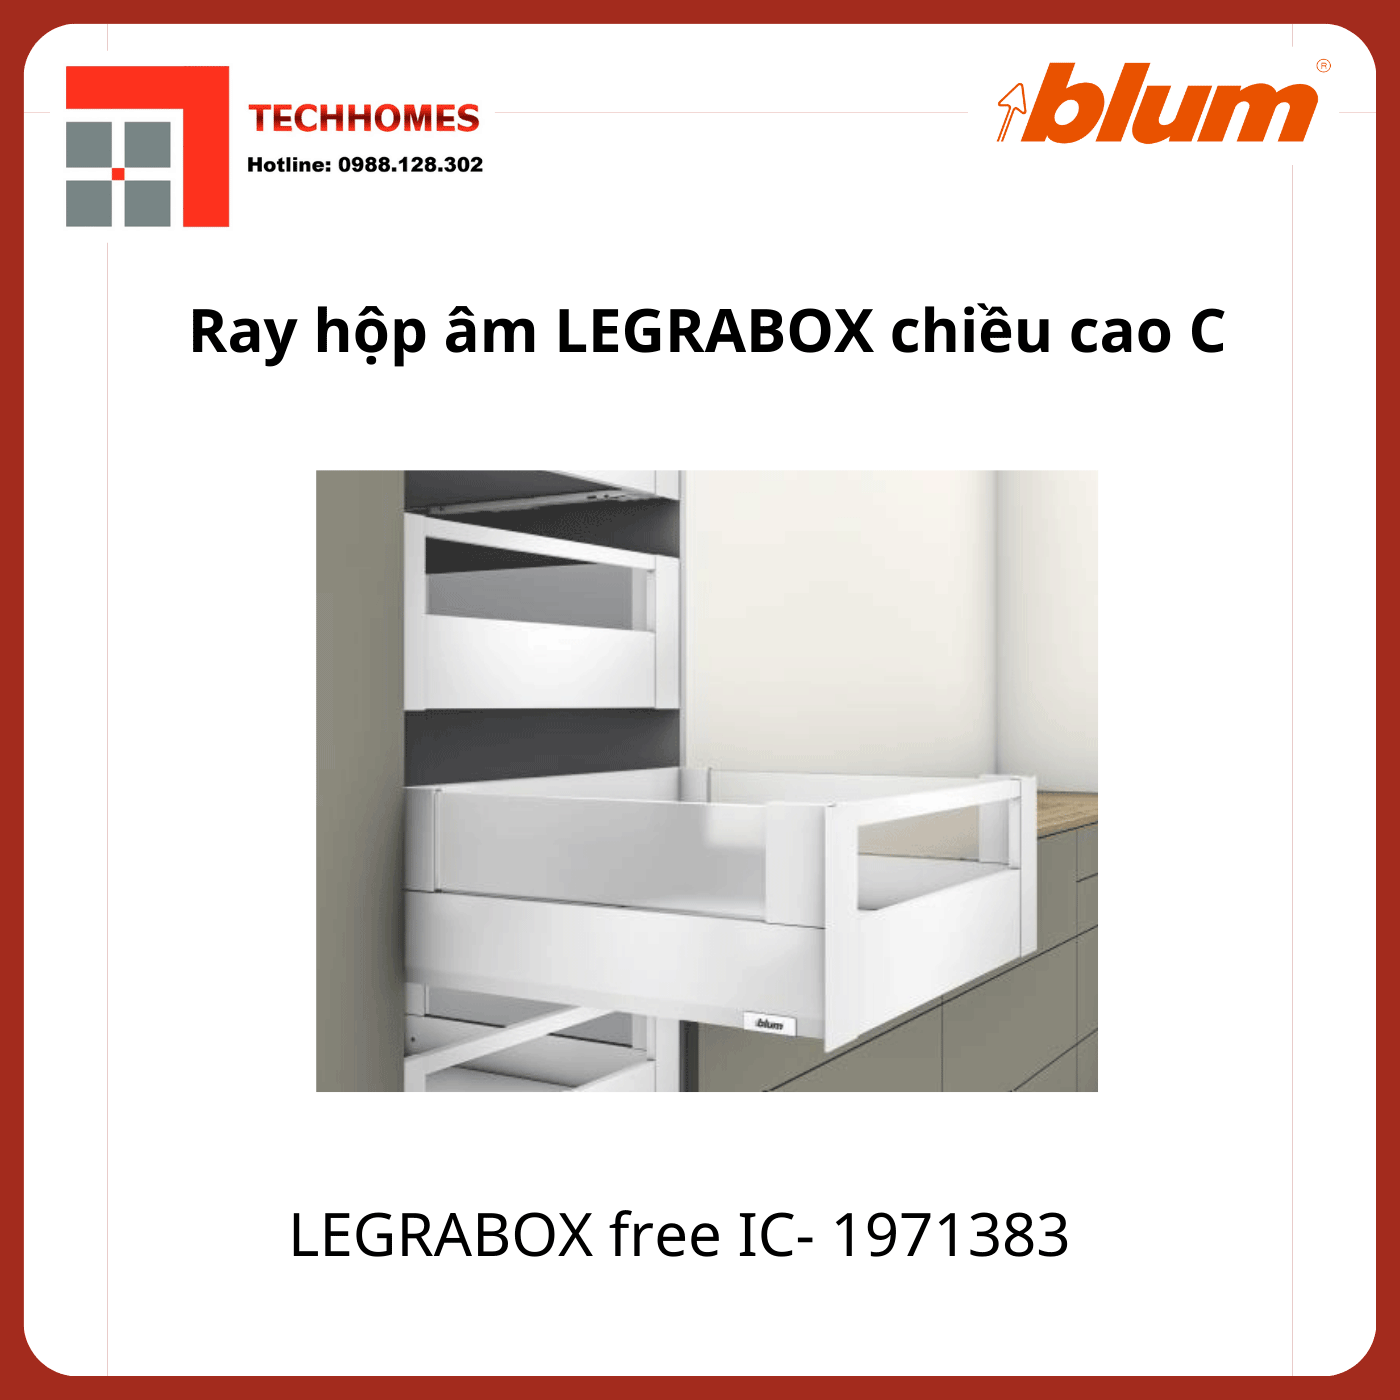 Ray hộp LEGRABOX free IC, chiều cao C 177mm, 1971383, trắng